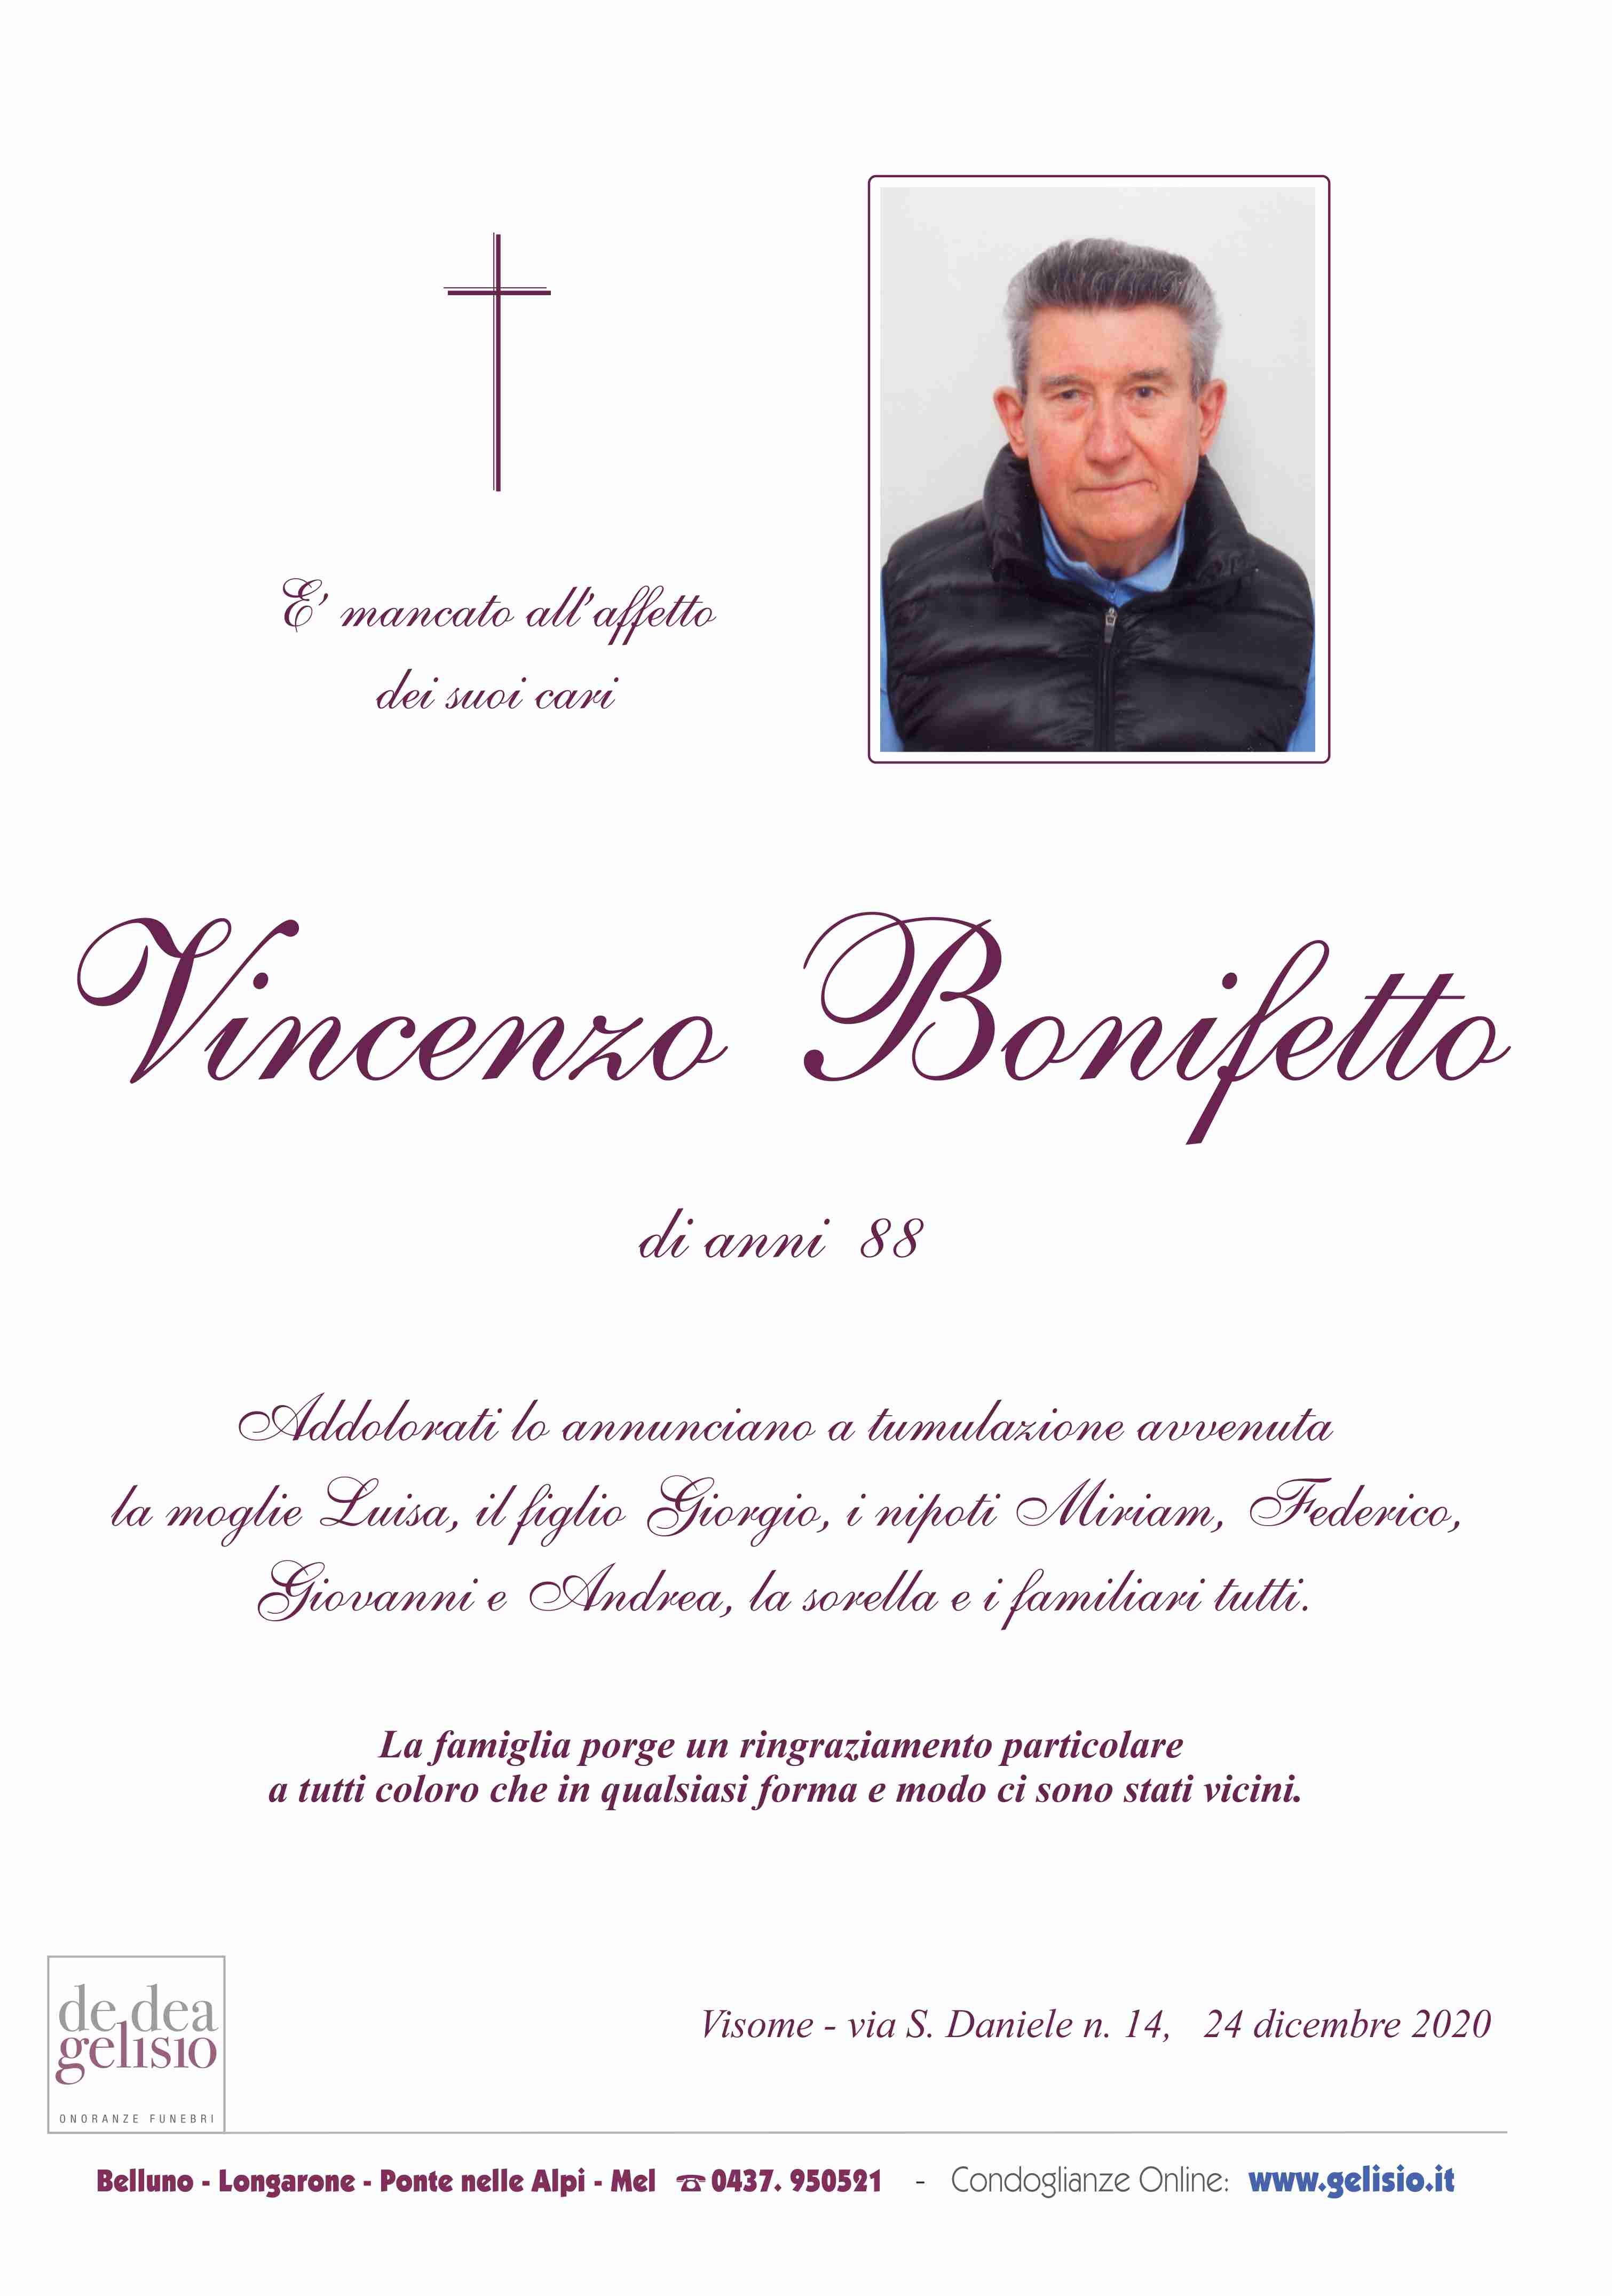 Bonifetto Vincenzo